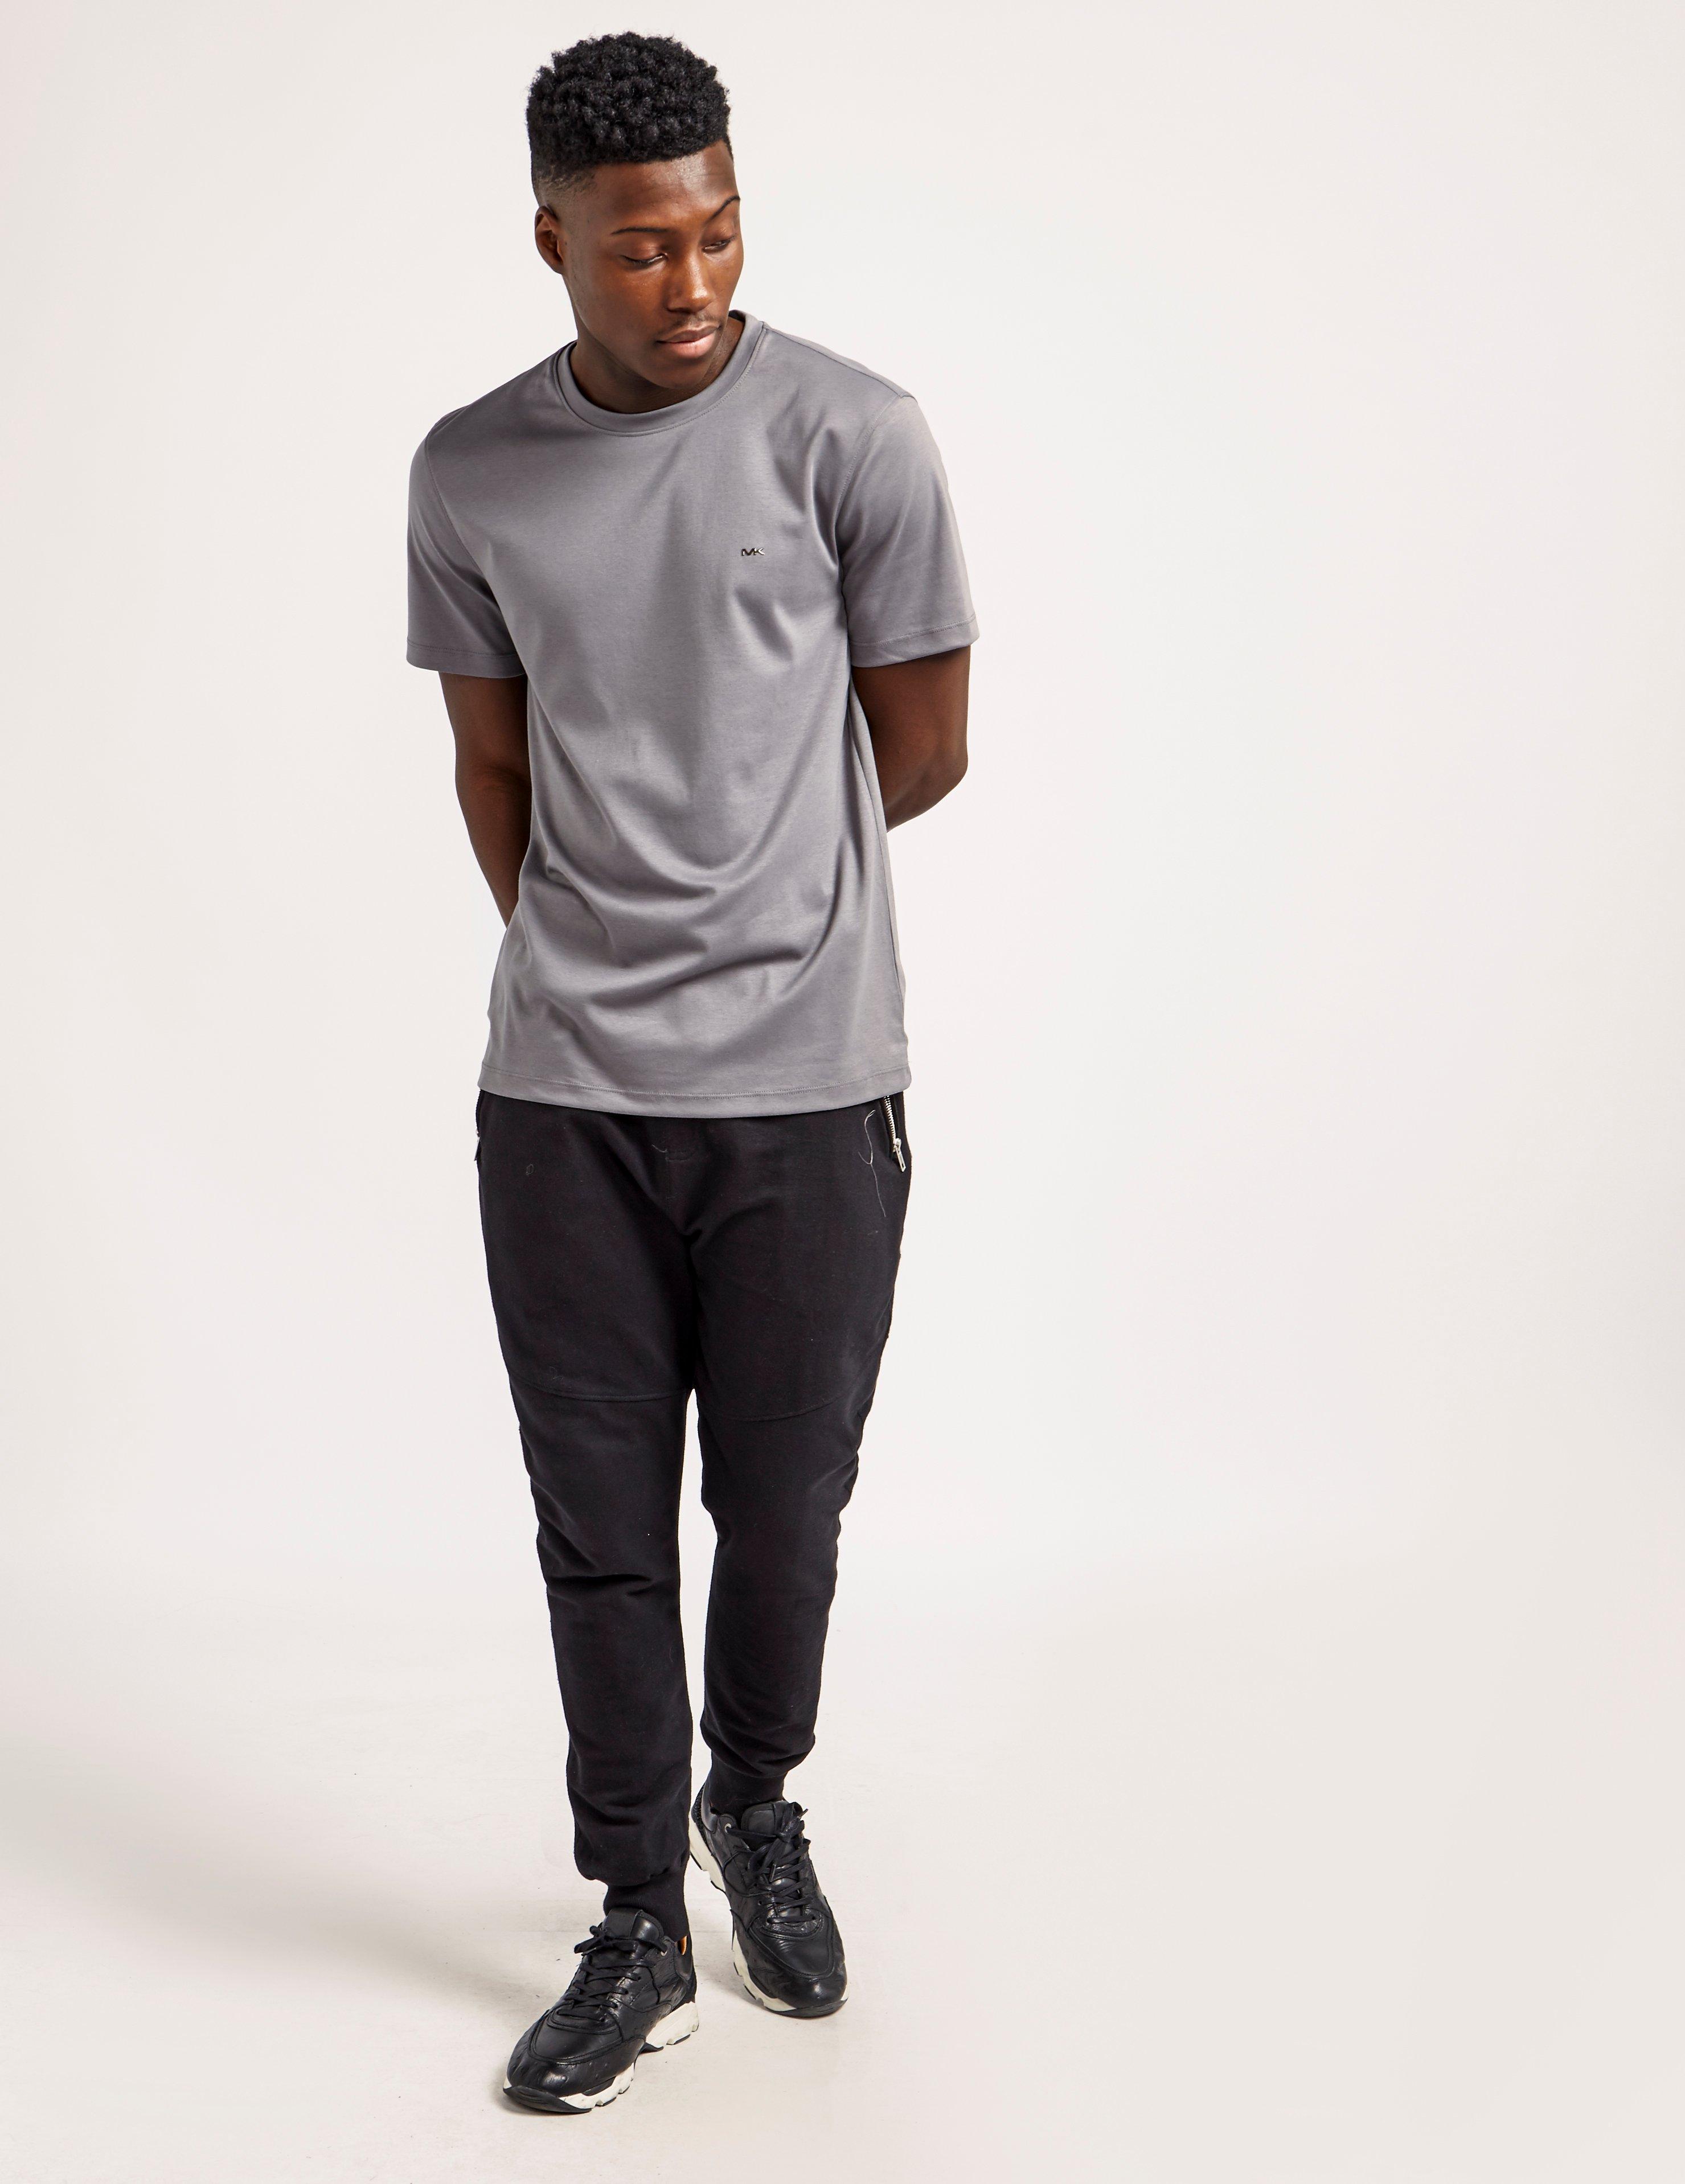 Lyst - Michael Kors Short Sleeve Sleek T-shirt in Gray for Men